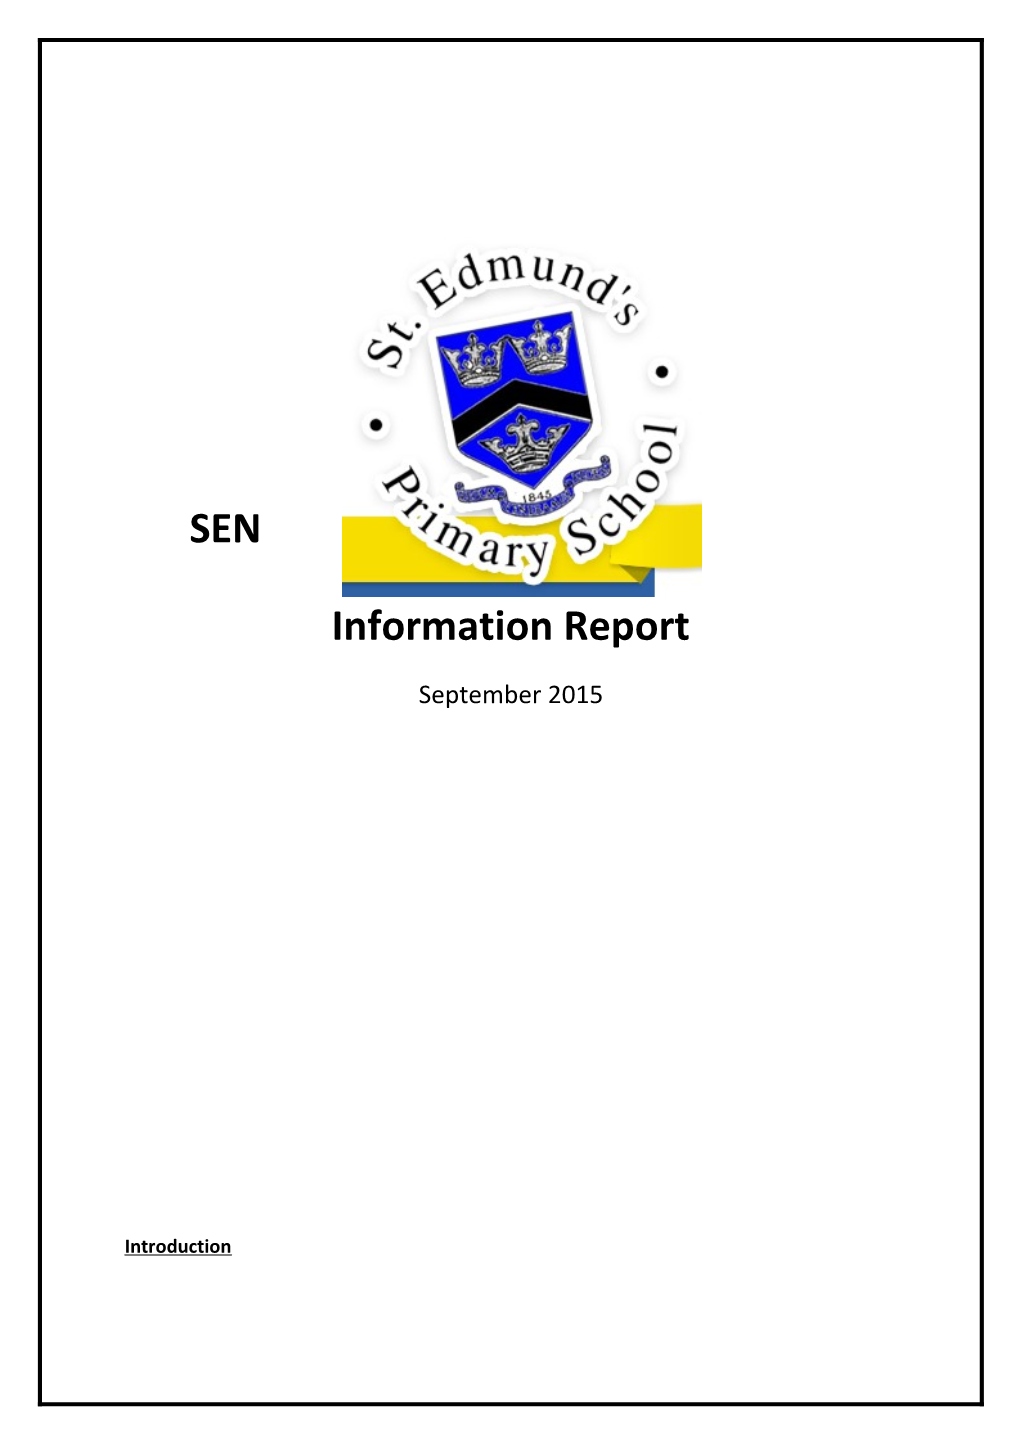 SEN Information Report s1